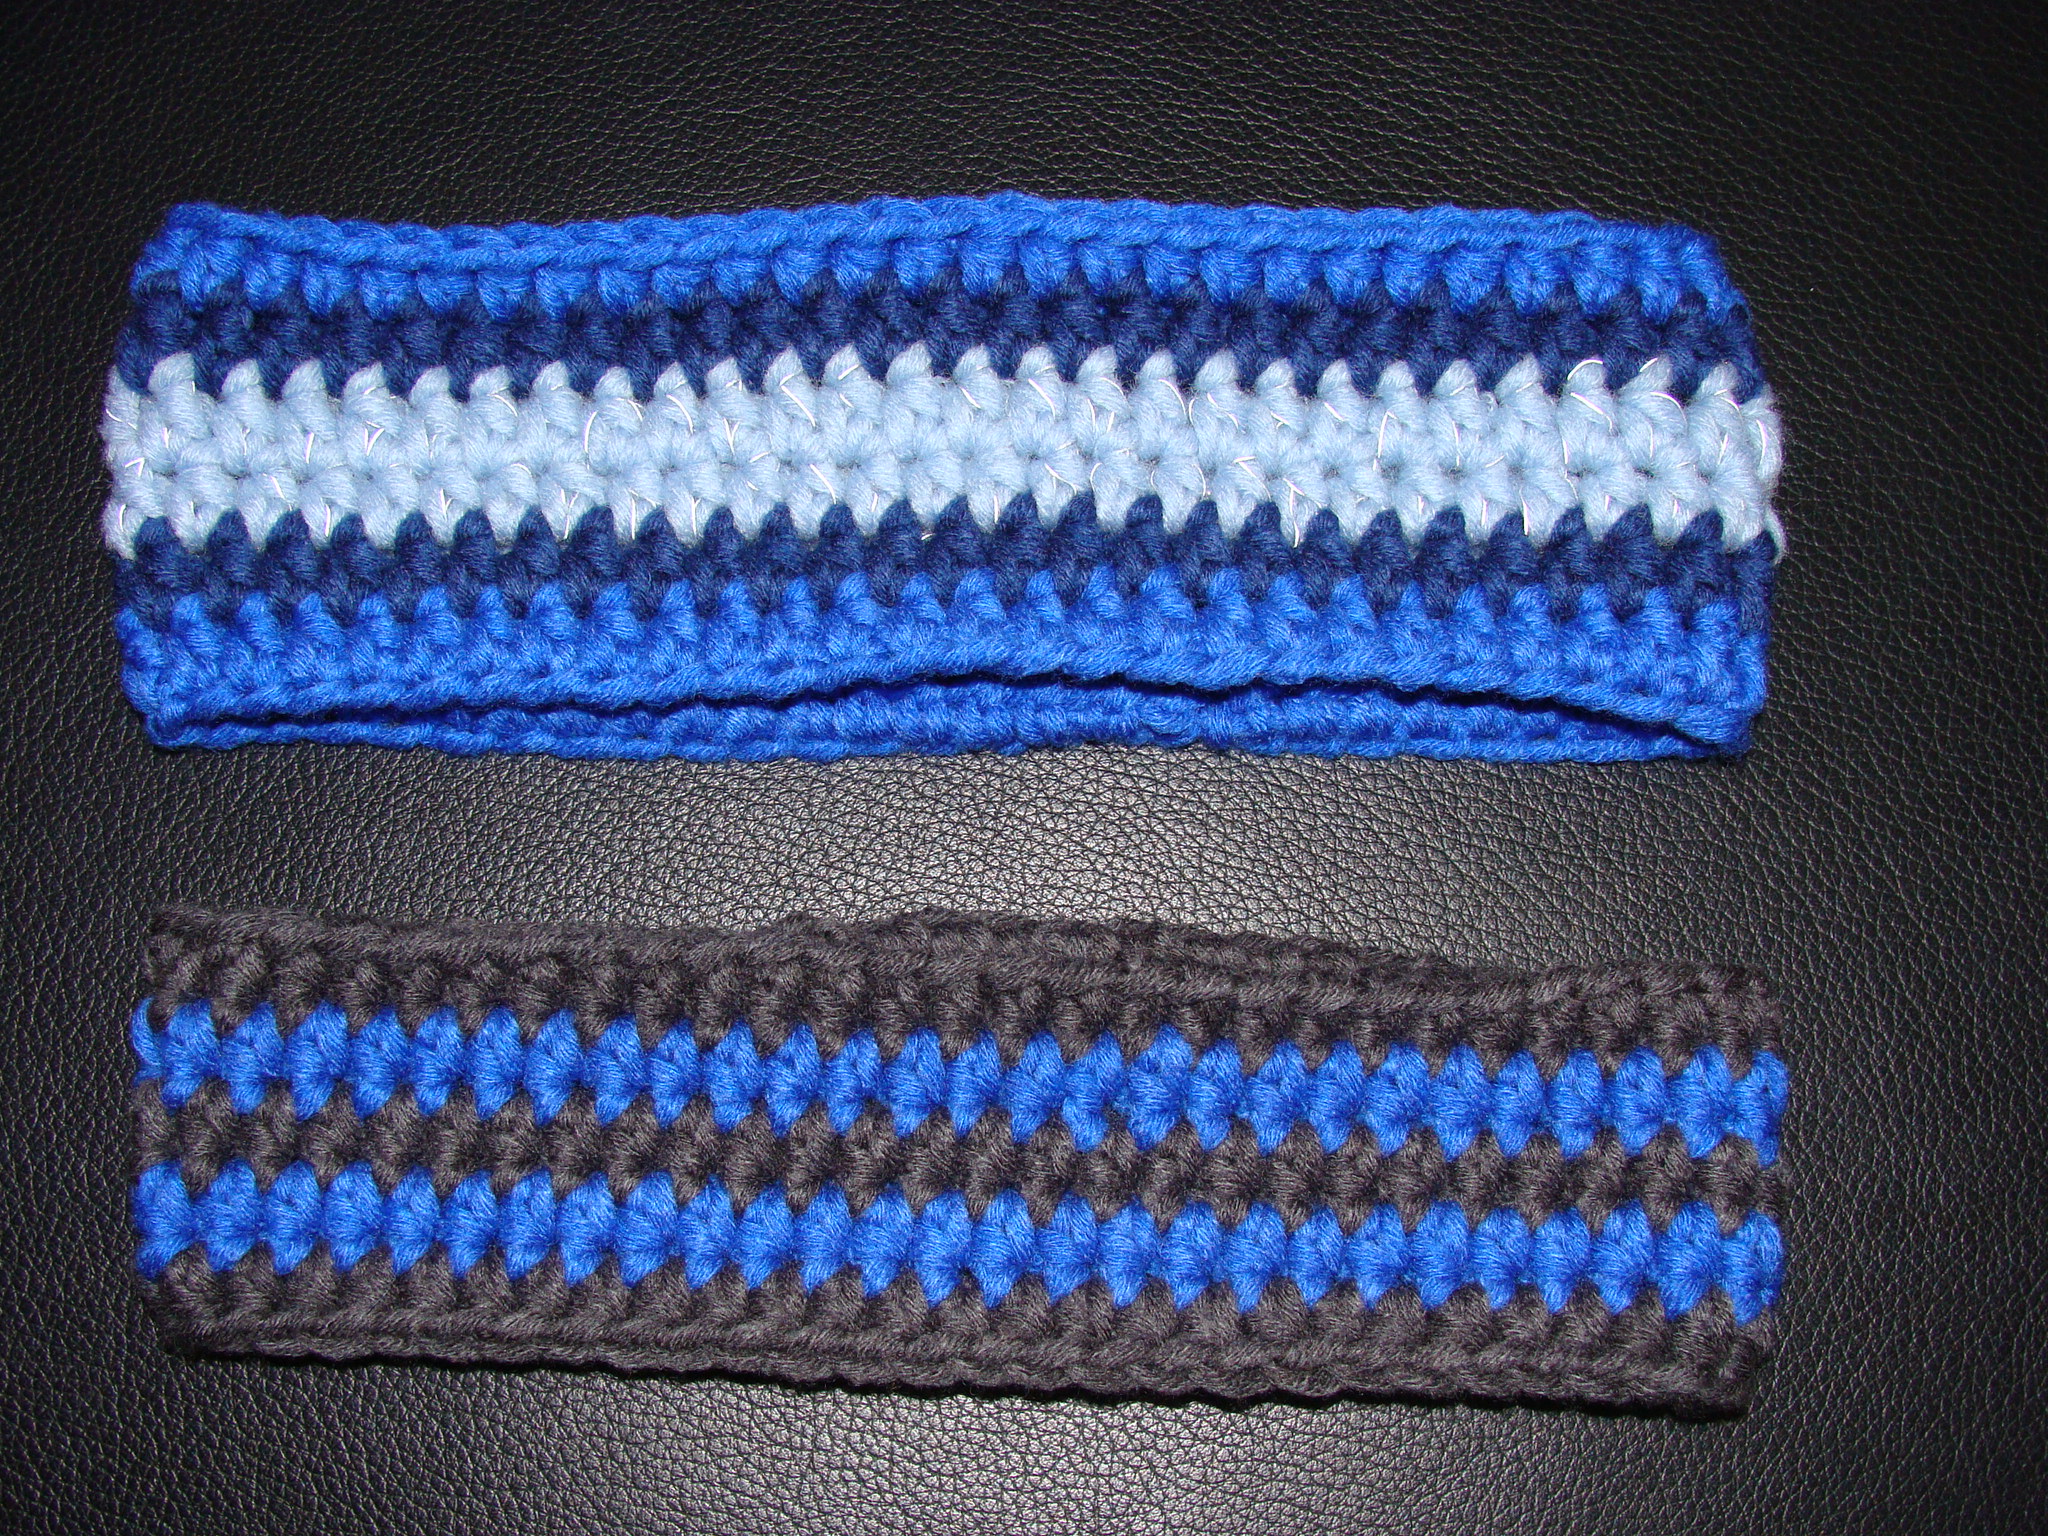 Stirnband blau, Grösse M-L, ca. 9 cm breit,  (myboshi Nr. 1) CHF 12.00 / Stirnband blau-grau, Grösse M, ca. 7 cm breit,  (myboshi Nr. 1) CHF 10.00